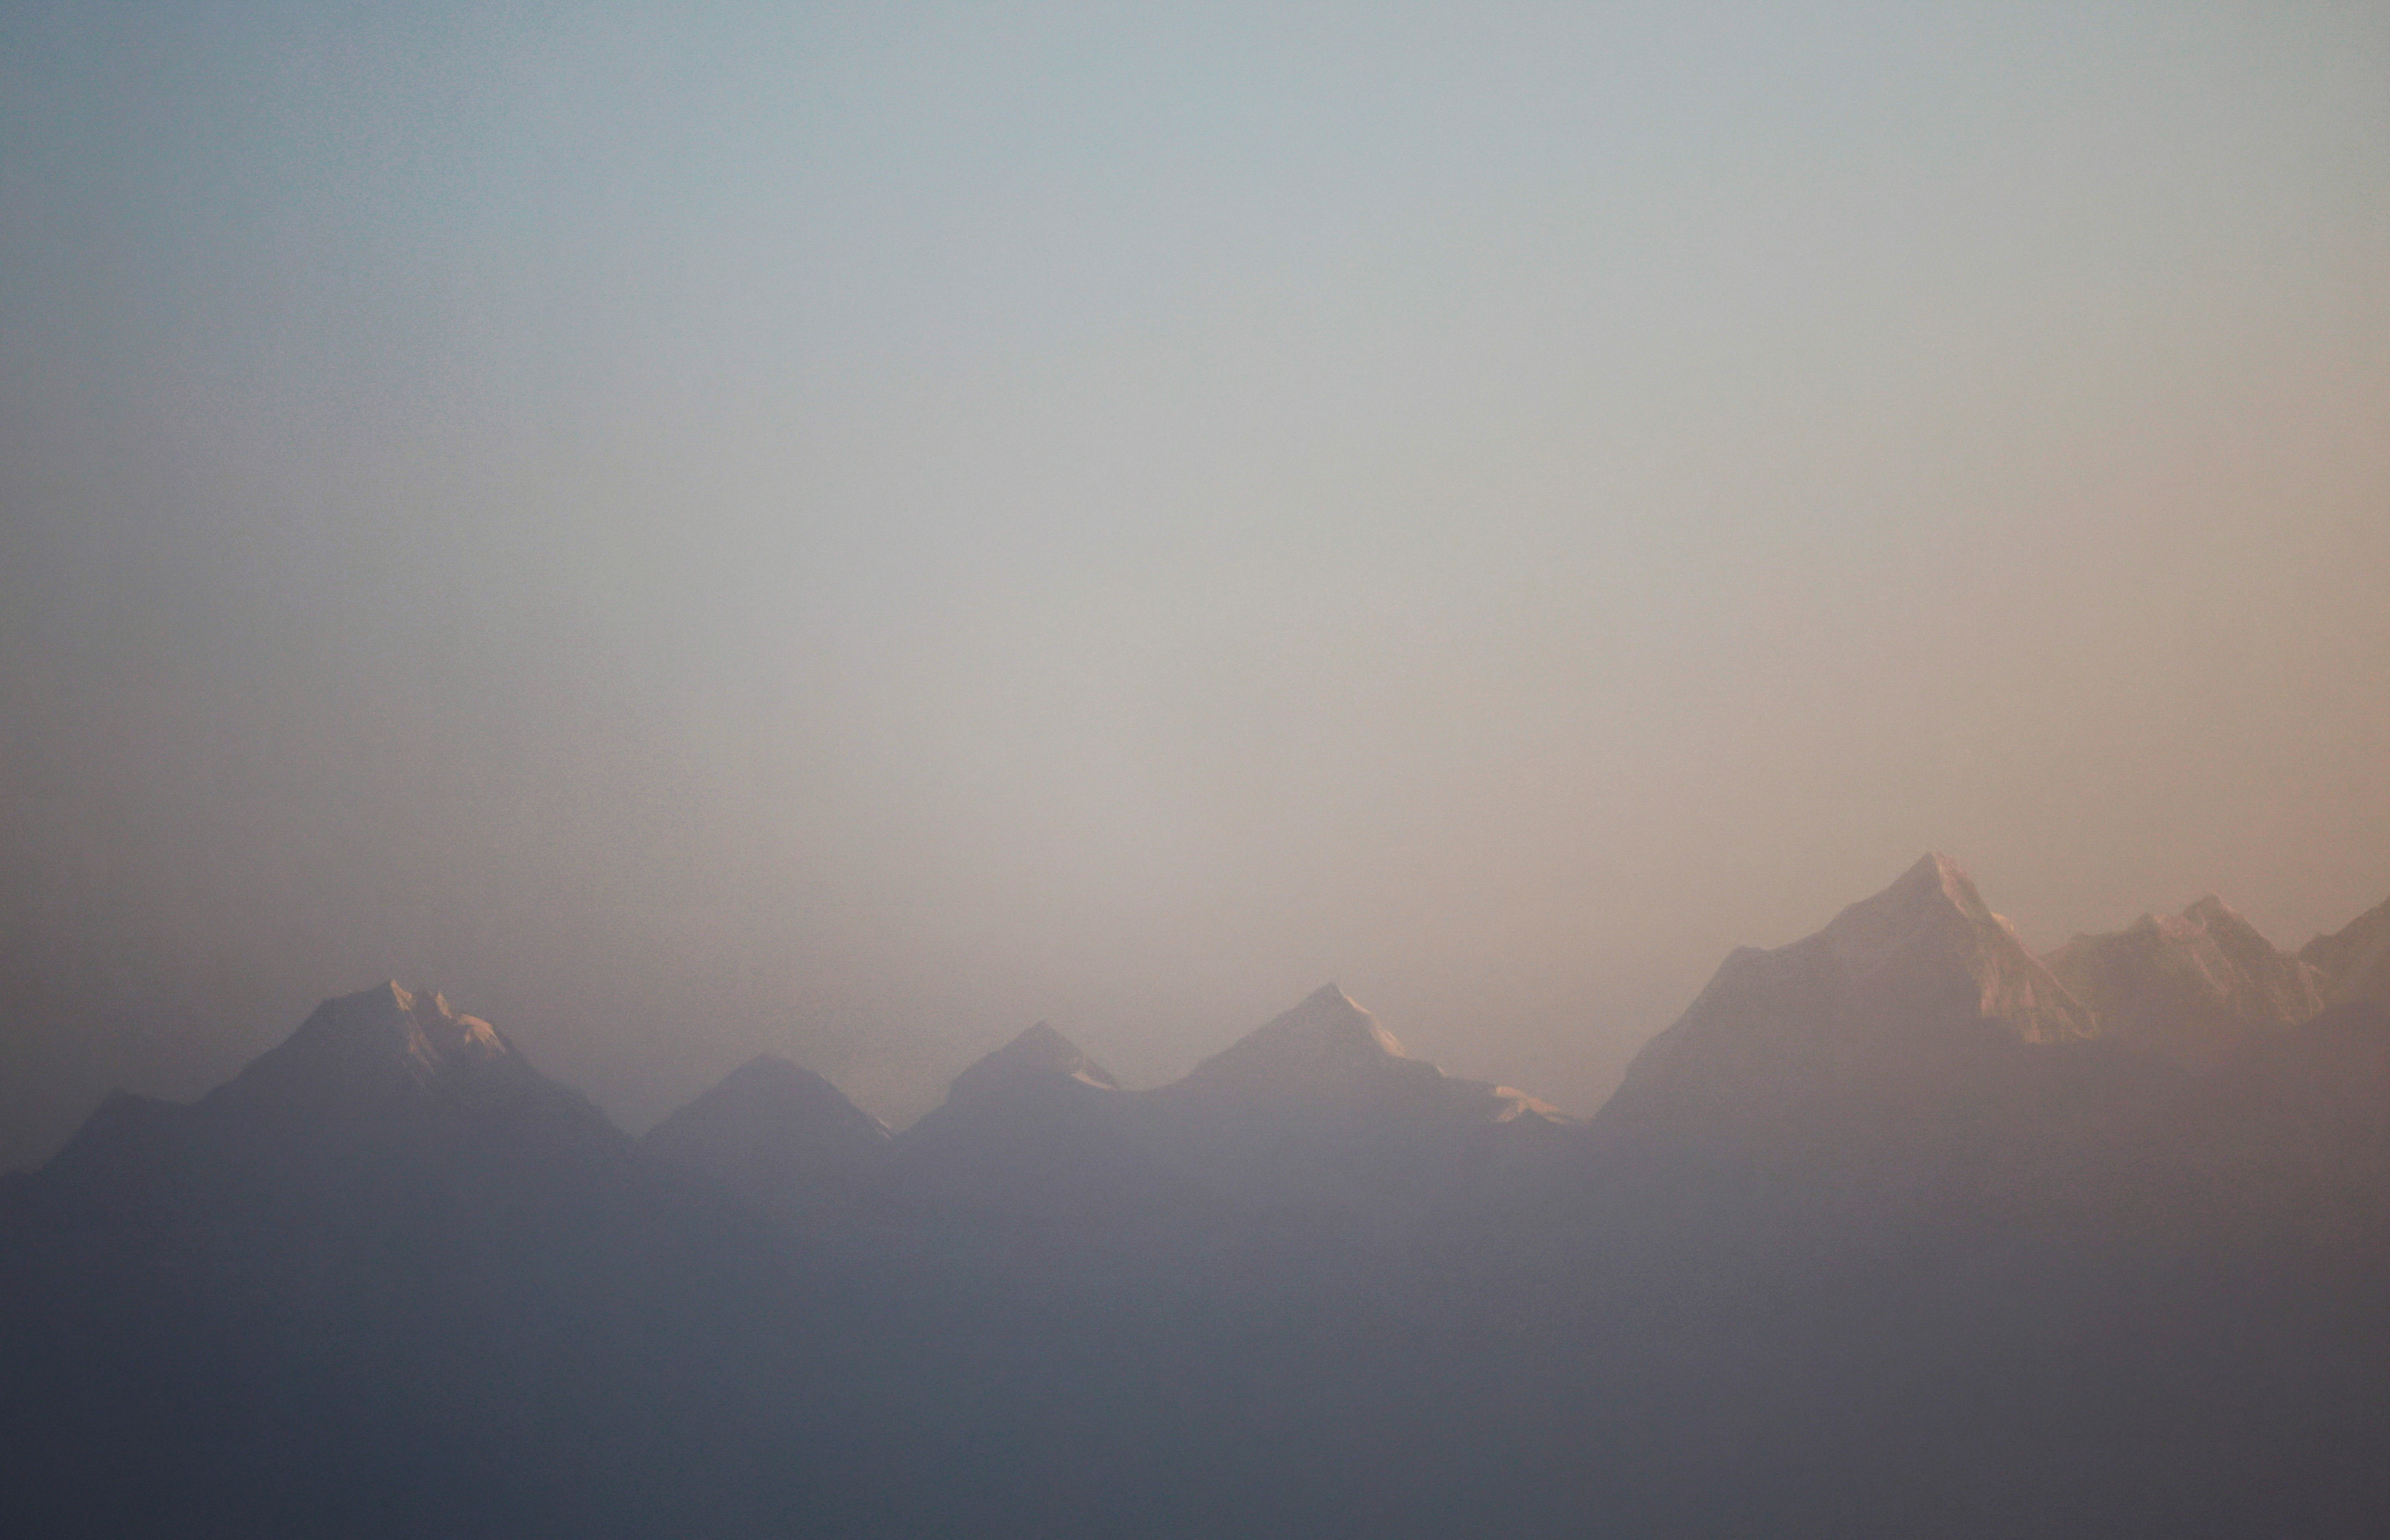 Nepali Sherpa sets climbing record on Pakistan mountain | Reuters